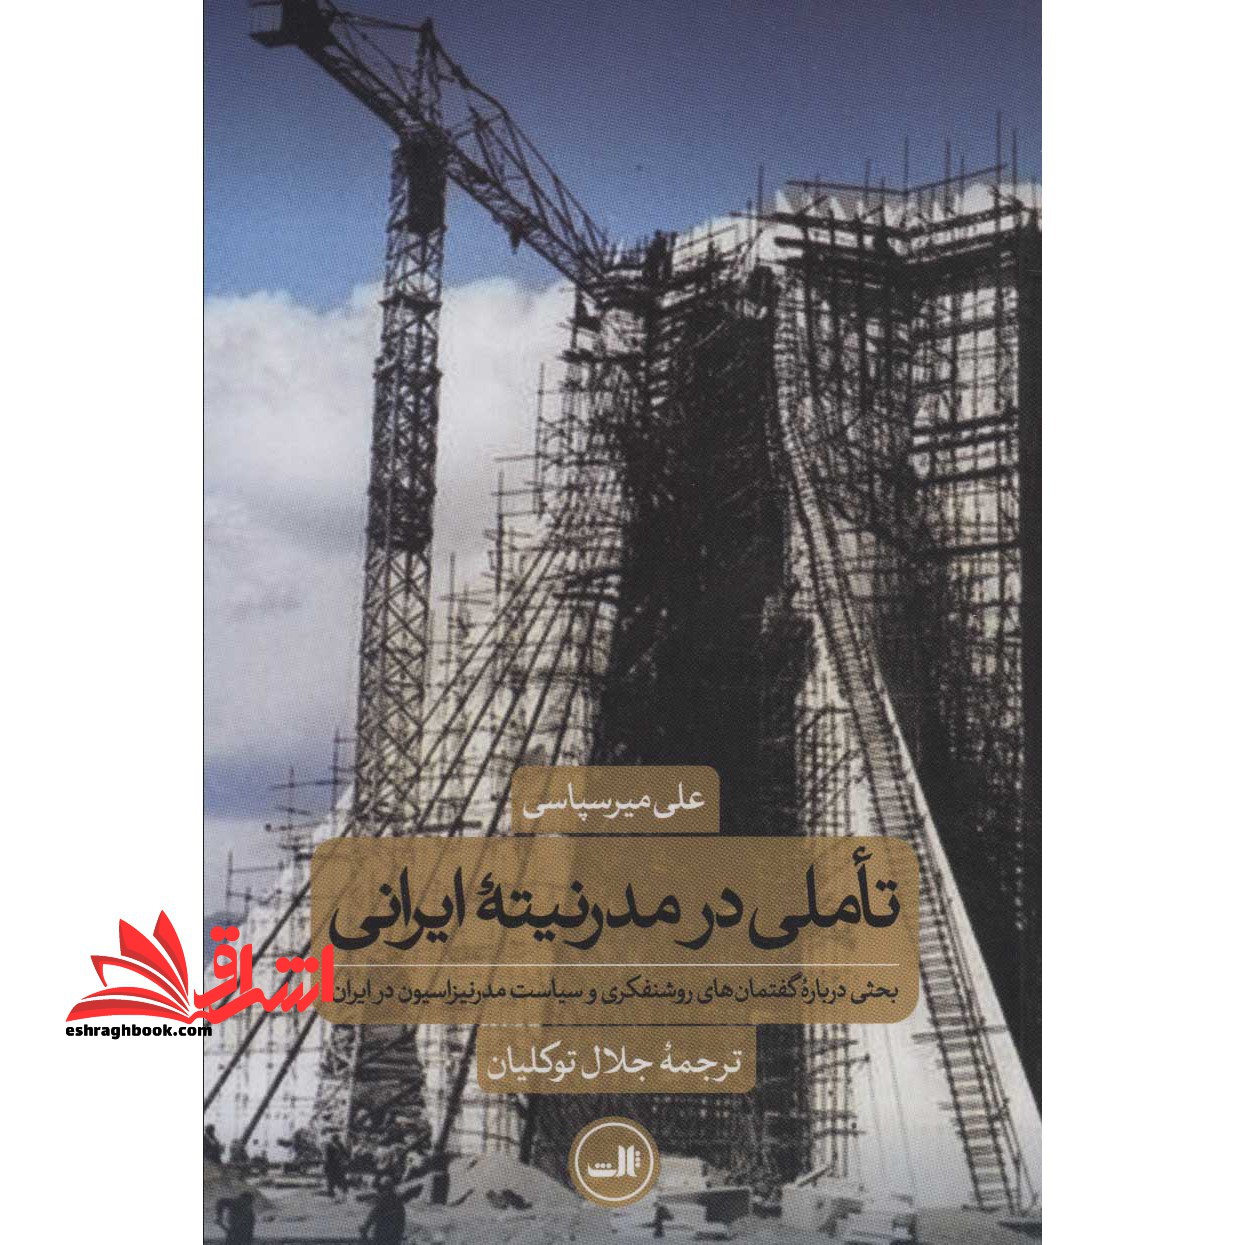 کتاب تاملی در مدرنیته ایرانی - (بحثی درباره گفتمان های روشنفکری و سیاست مدرنیزاسیون در ایران)